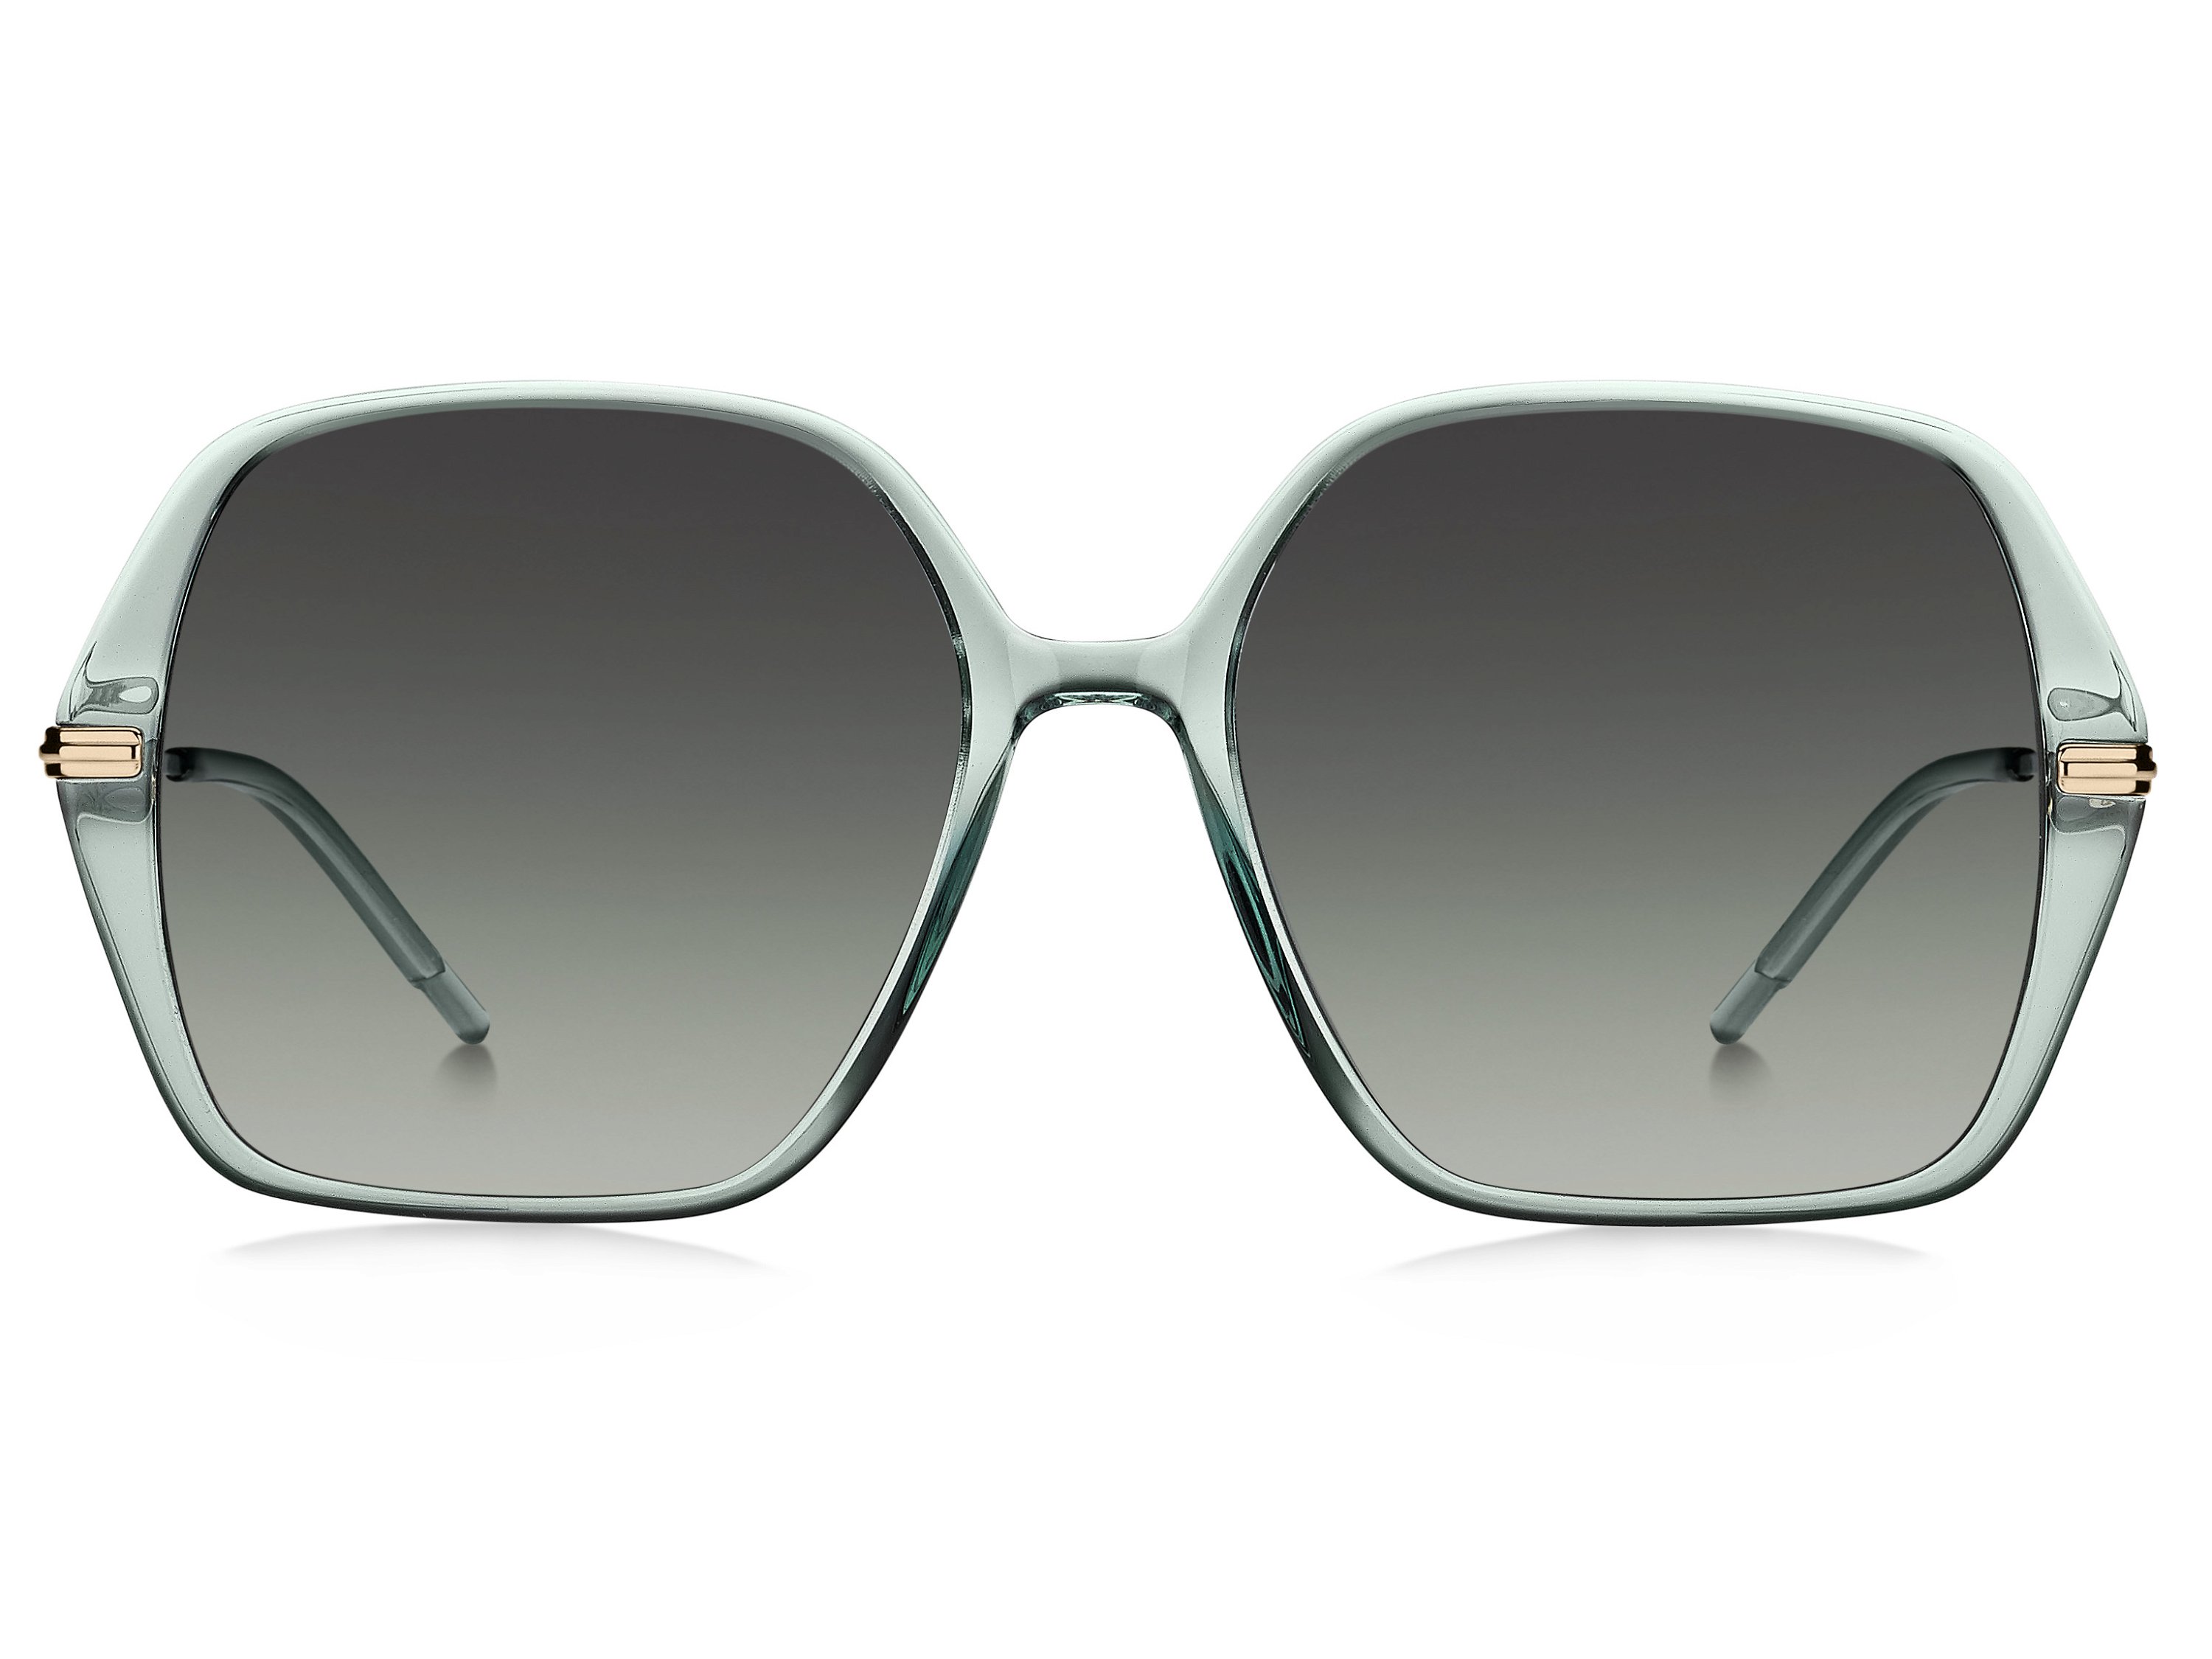 Das Bild zeigt die Sonnenbrille BOSS1660S PEF von der Marke BOSS in Grün/Gold.